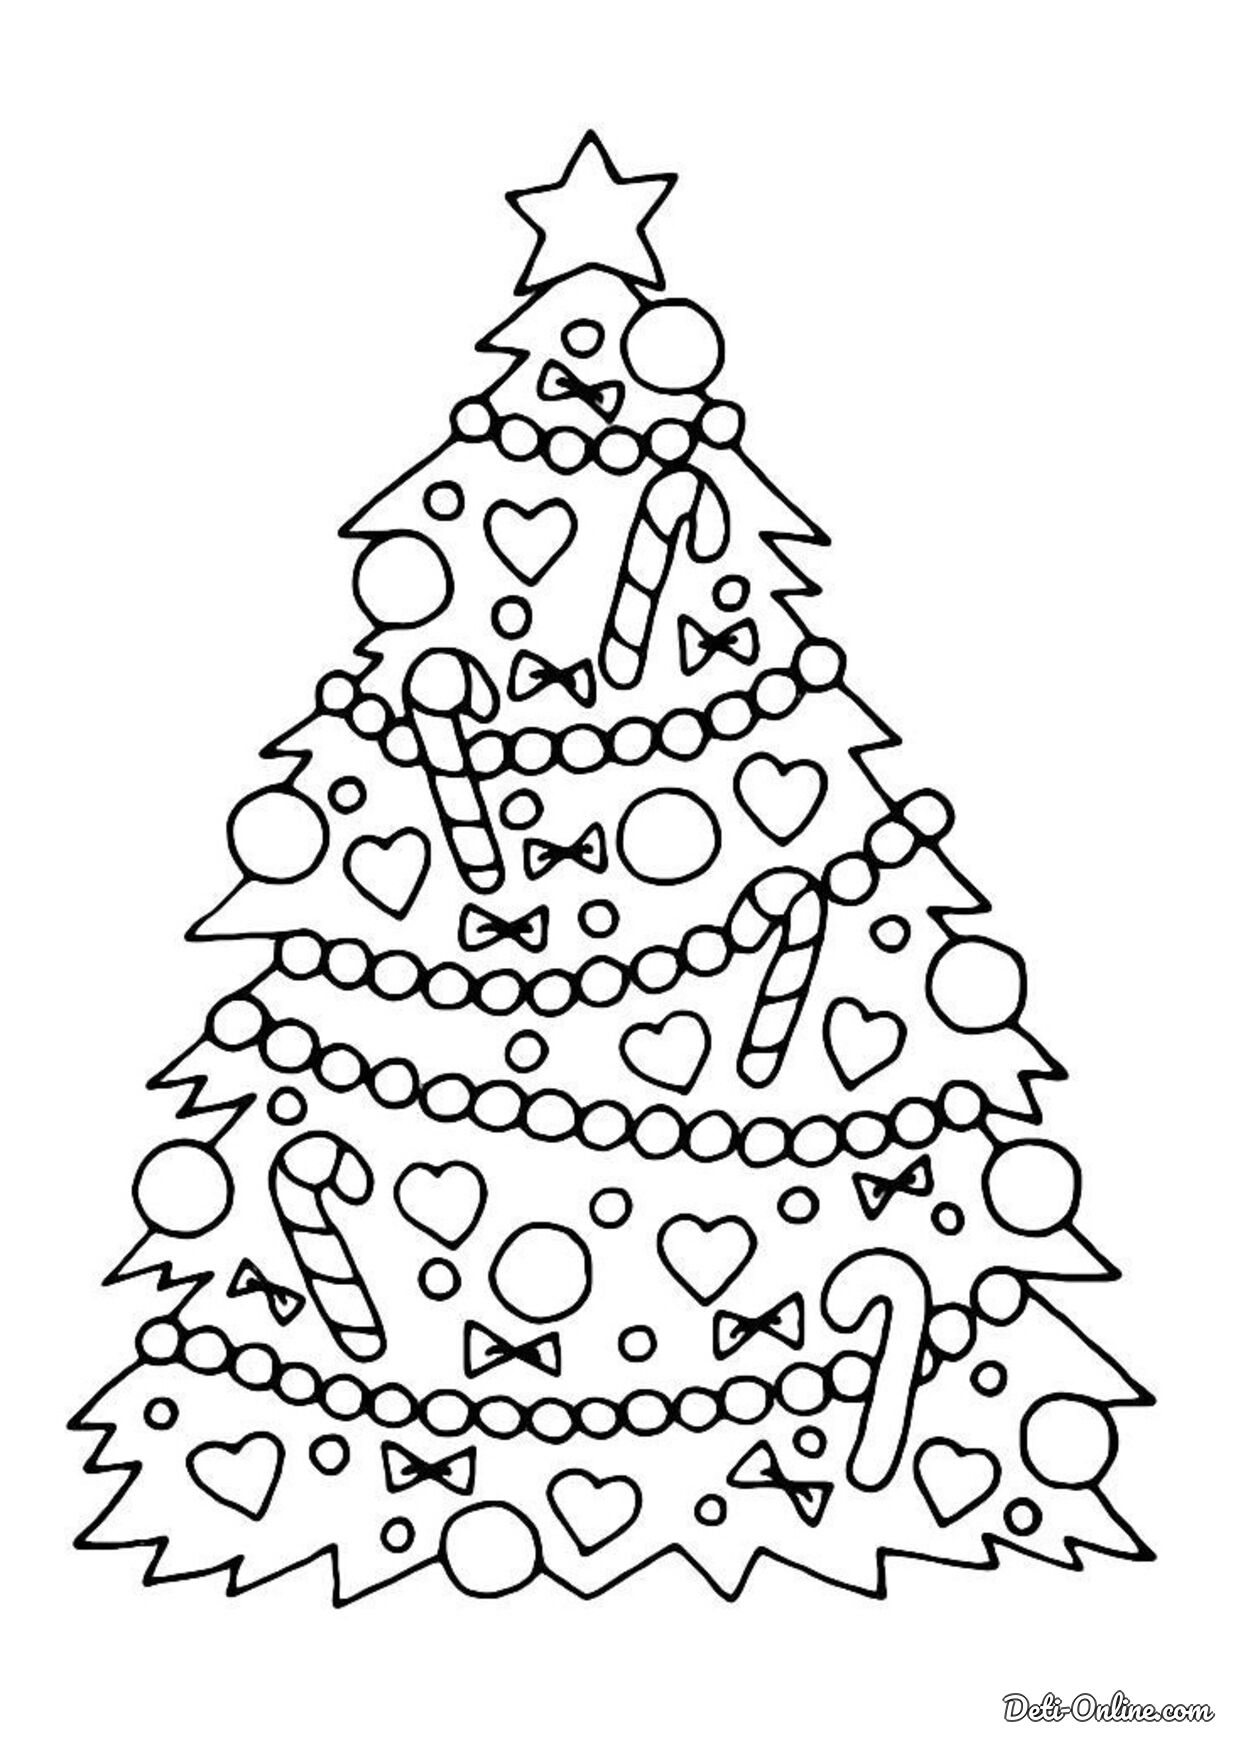 раскраска новогодняя елка картинка для детей распечатать 5